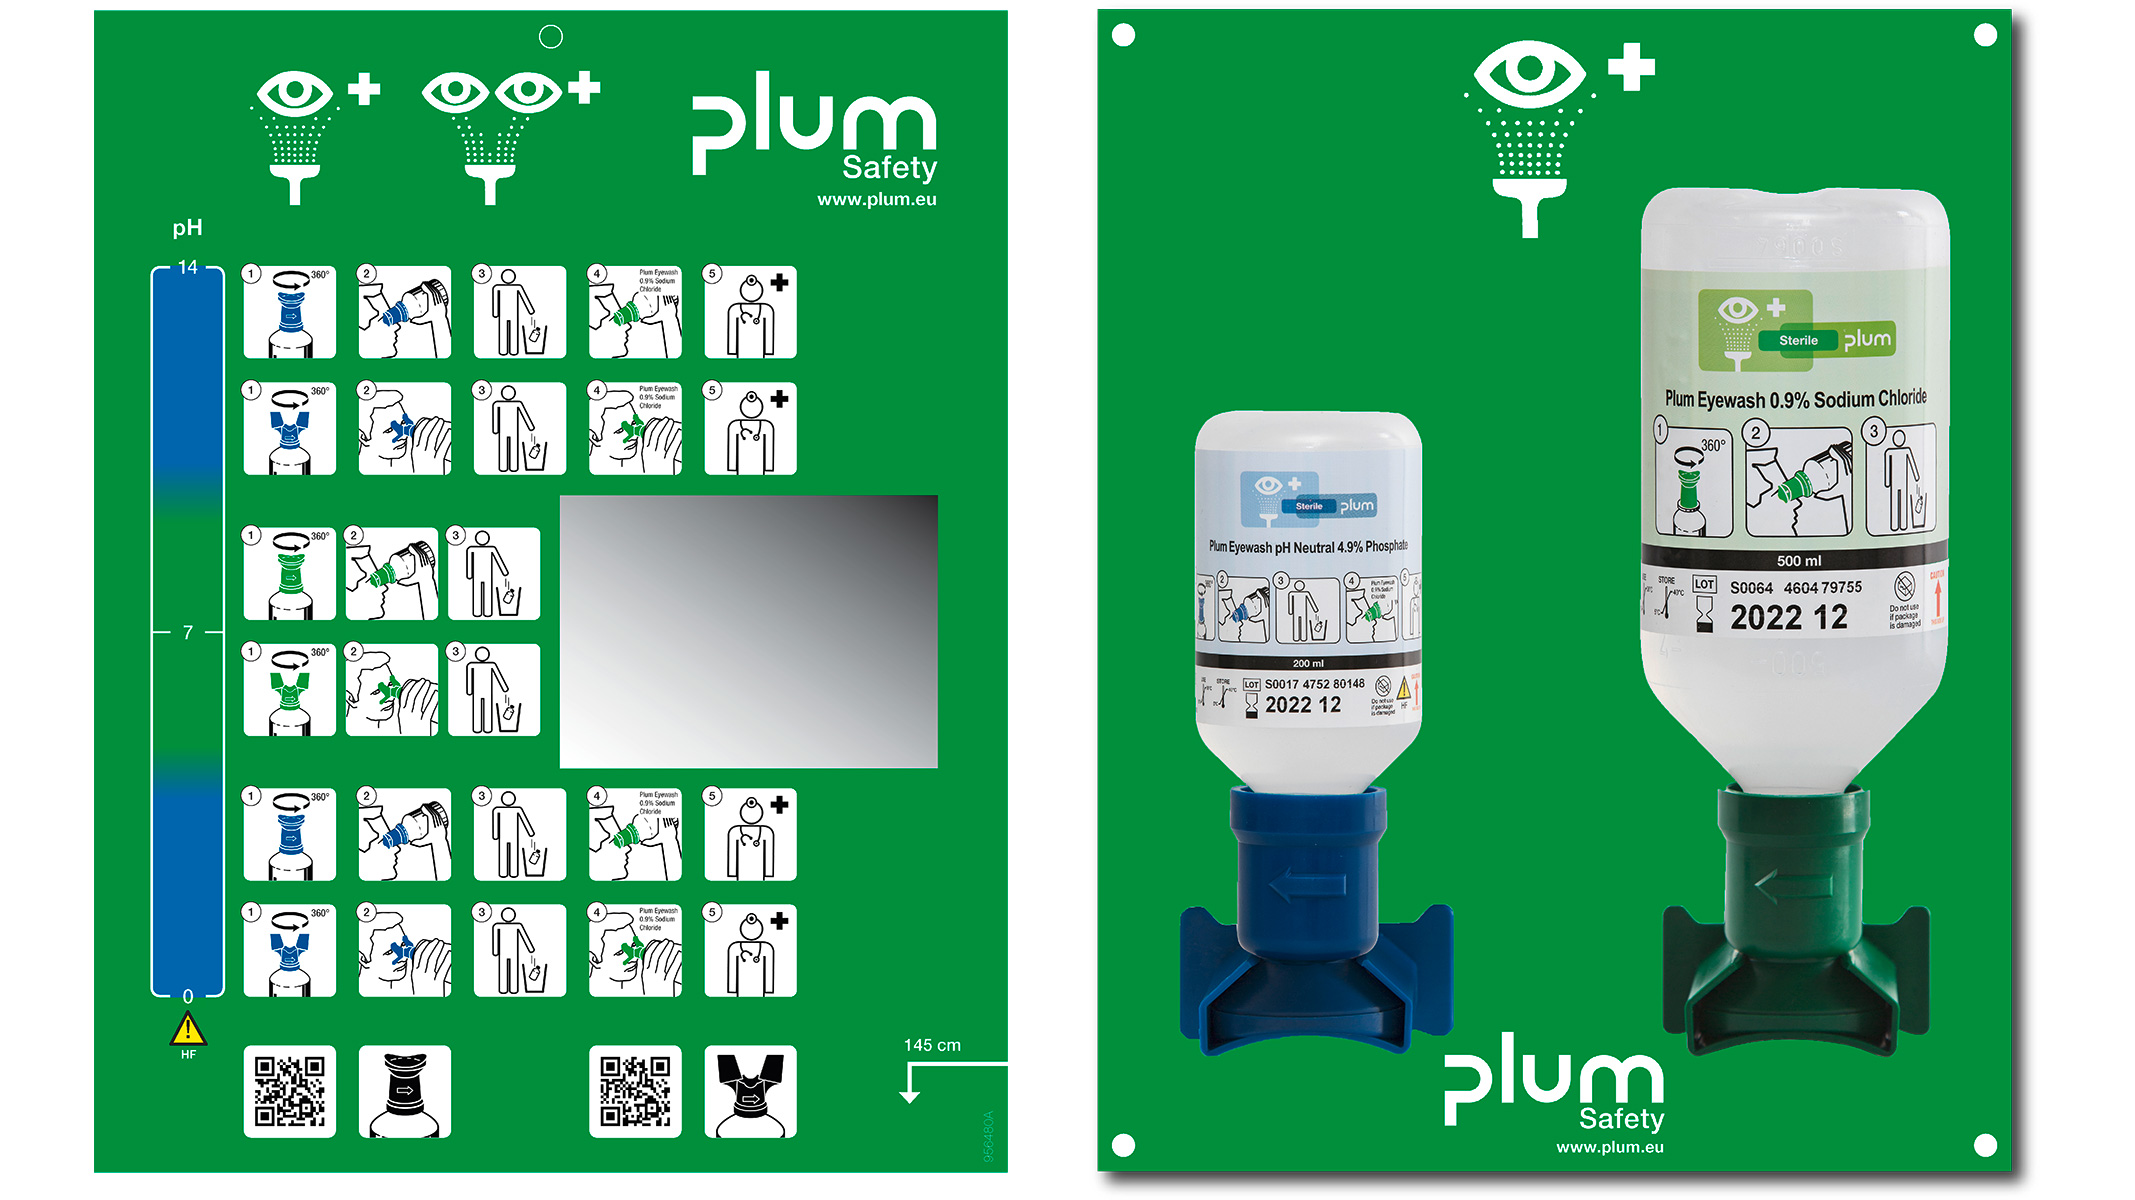 Plum Kombi-Augenspülstation für Unfälle mit Säuren oder Alkali